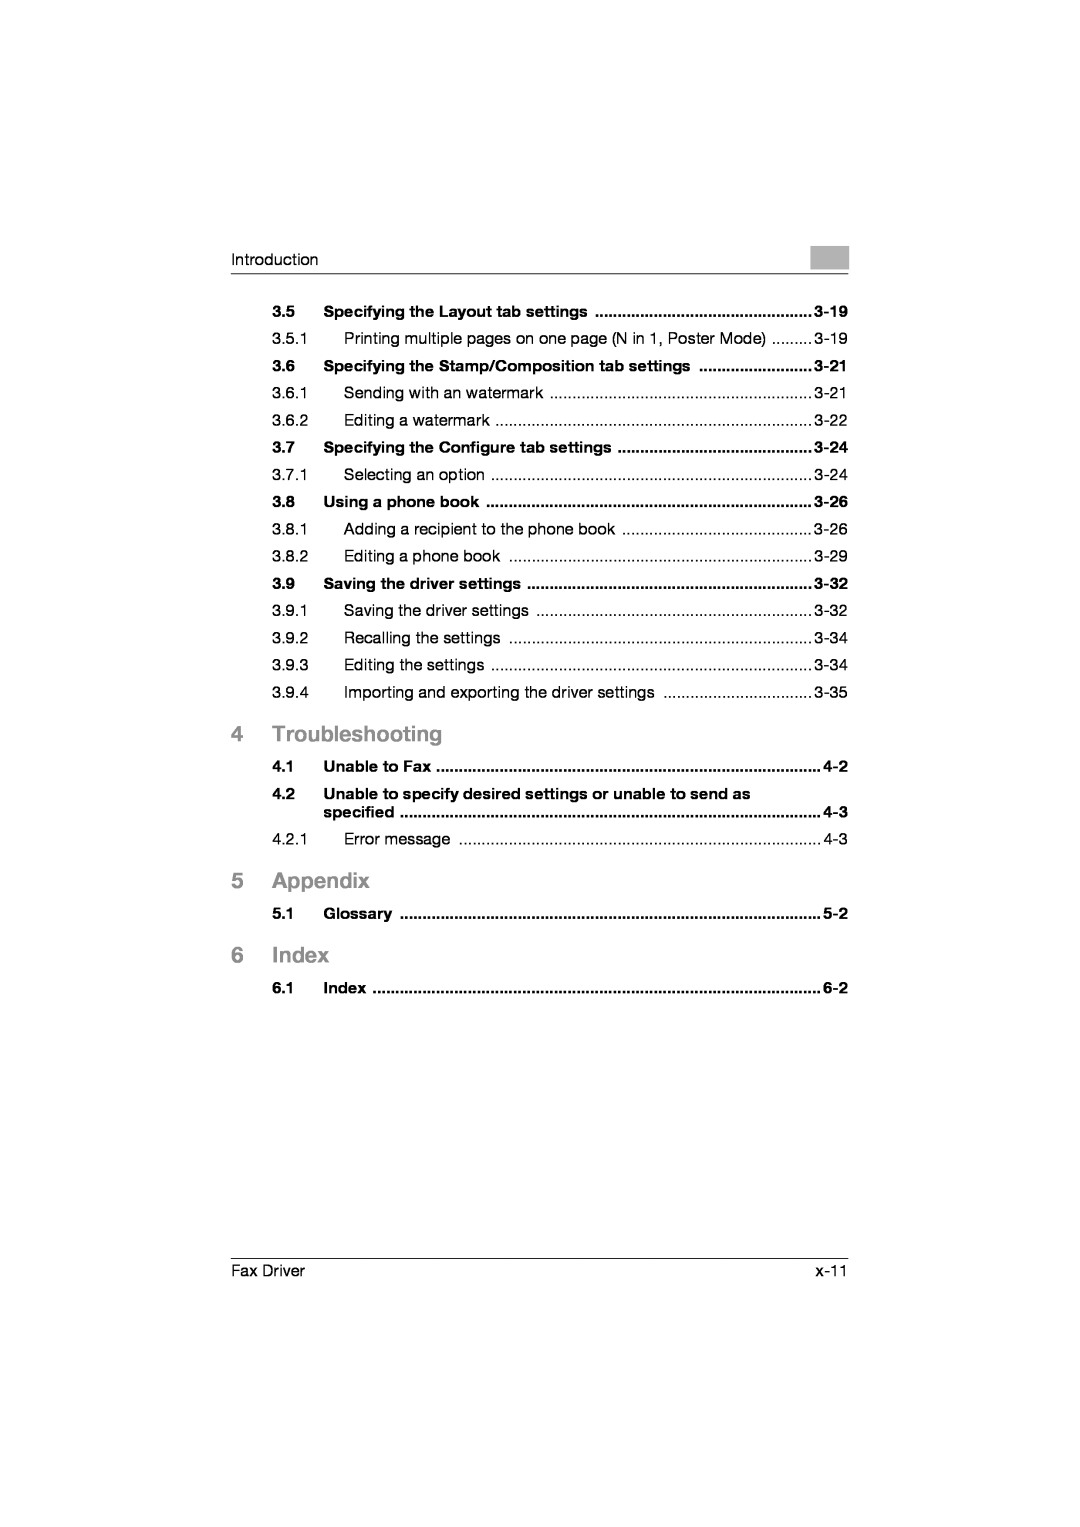 Konica Minolta 282, 222, 362 manual Troubleshooting, Appendix, Index 